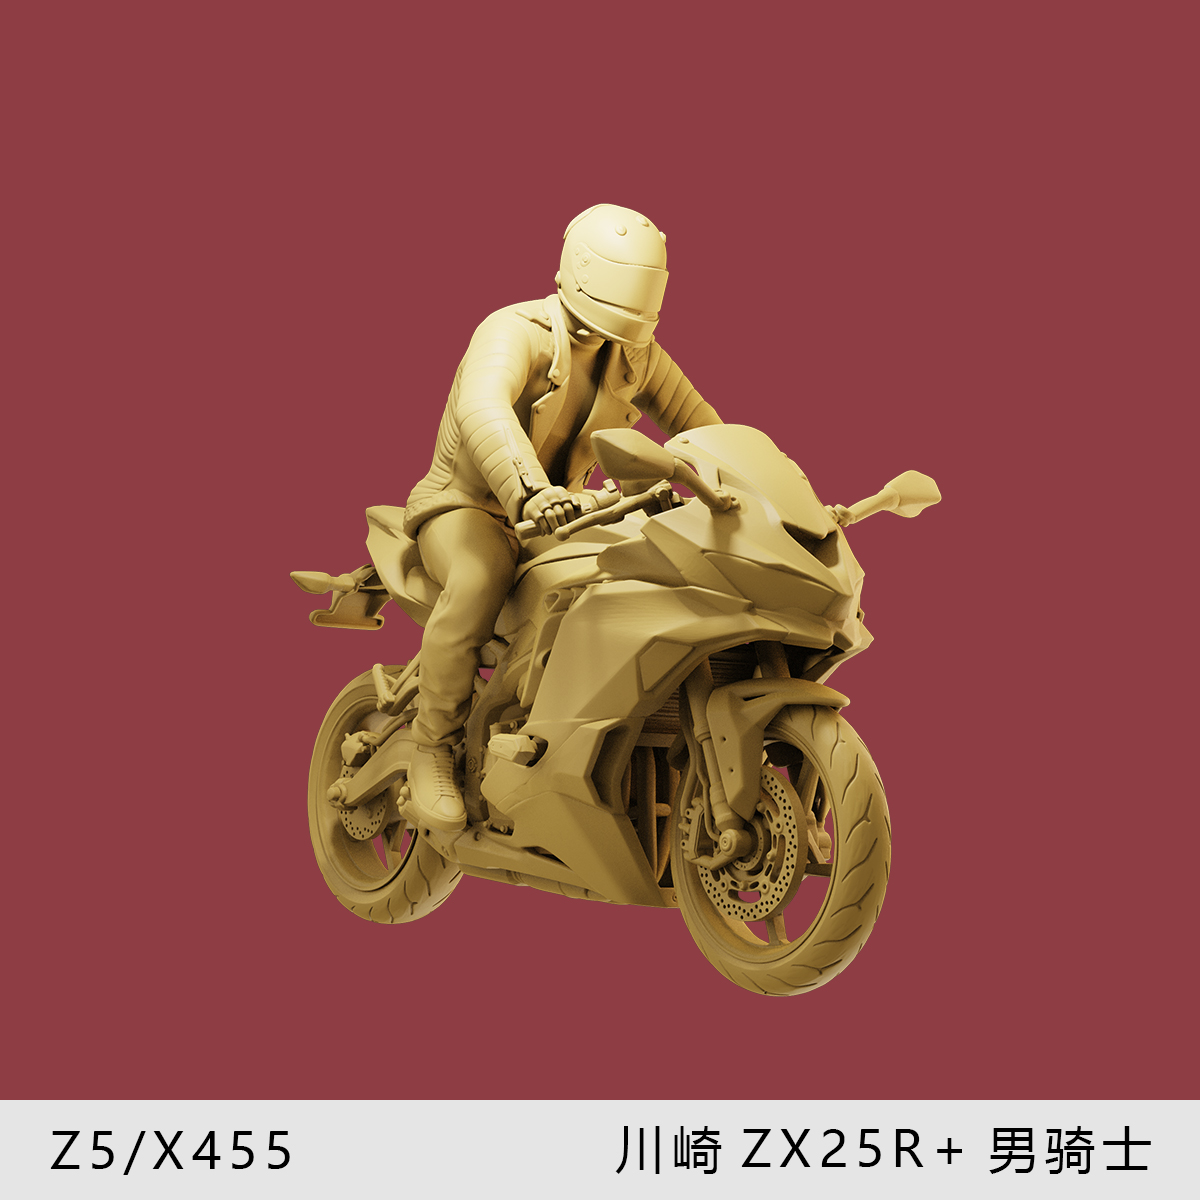 【川崎ZX25R】头盔男骑手 1/64摩托车模型手办1:43微缩沙盘白模